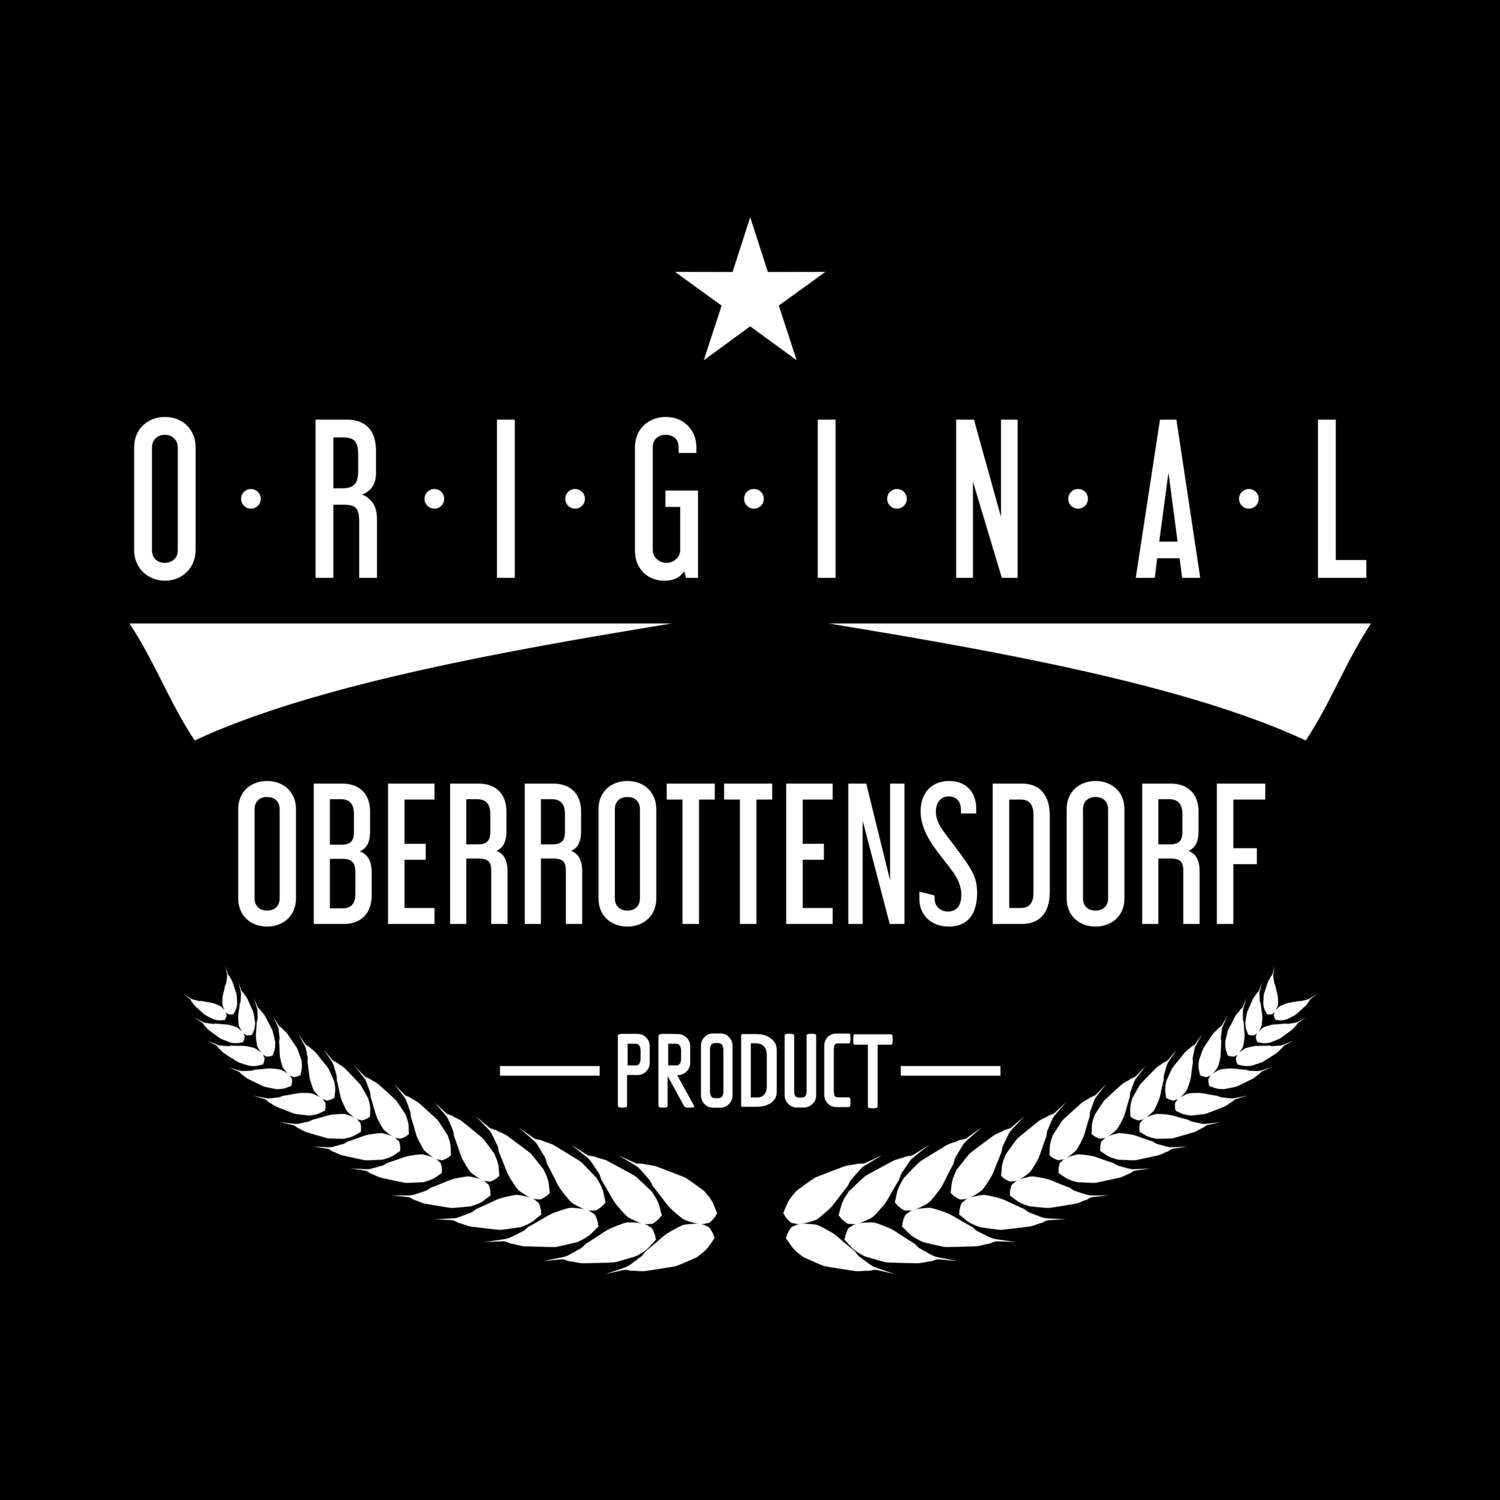 Oberrottensdorf T-Shirt »Original Product«